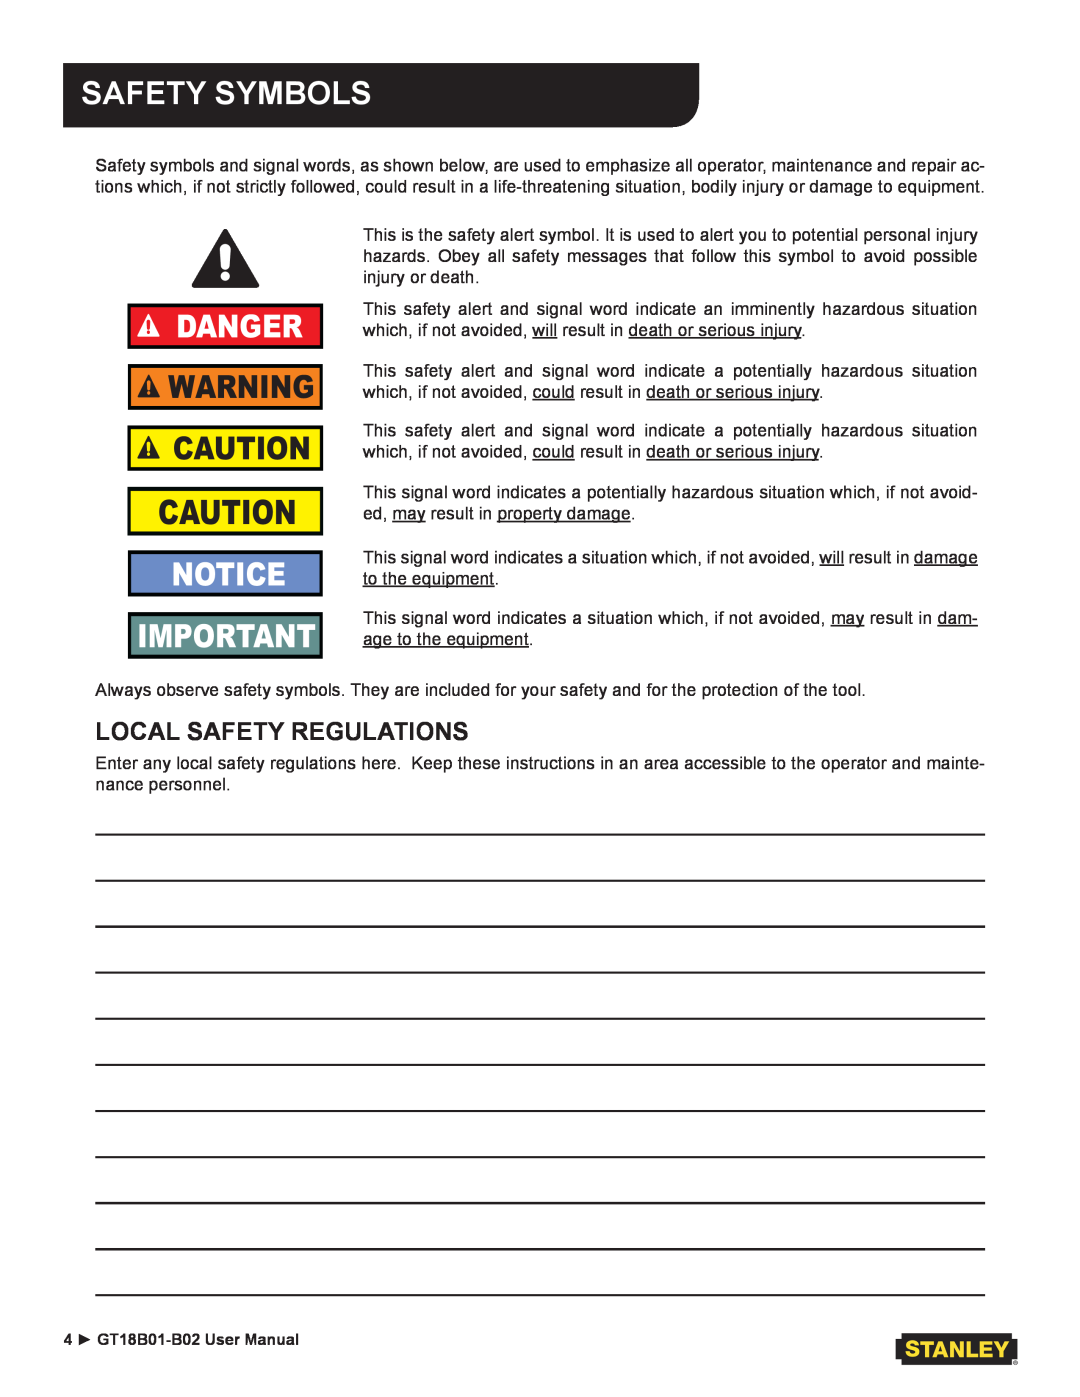 Stanley Black & Decker GT18B02, GT18B01 user manual Safety Symbols, Danger, Local Safety Regulations 